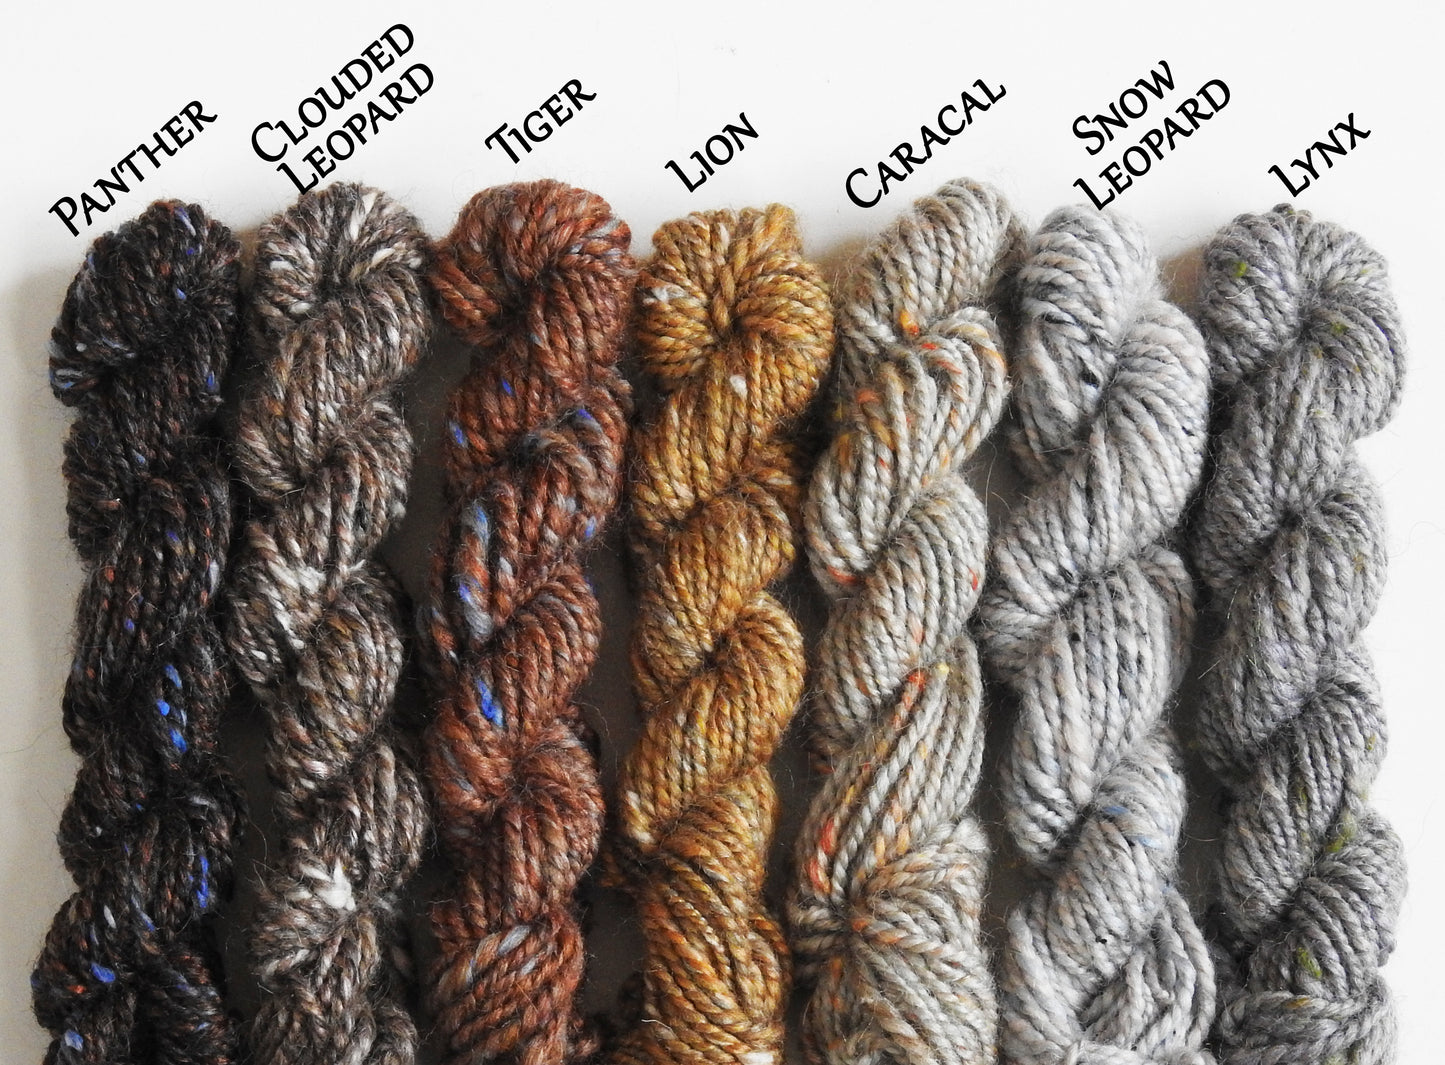 Clouded Leopard - Custom Blended Top- Merino/ Shetland/ Tussah Silk/ Baby Camel /Tweed Blend (25/25/25/15/10)